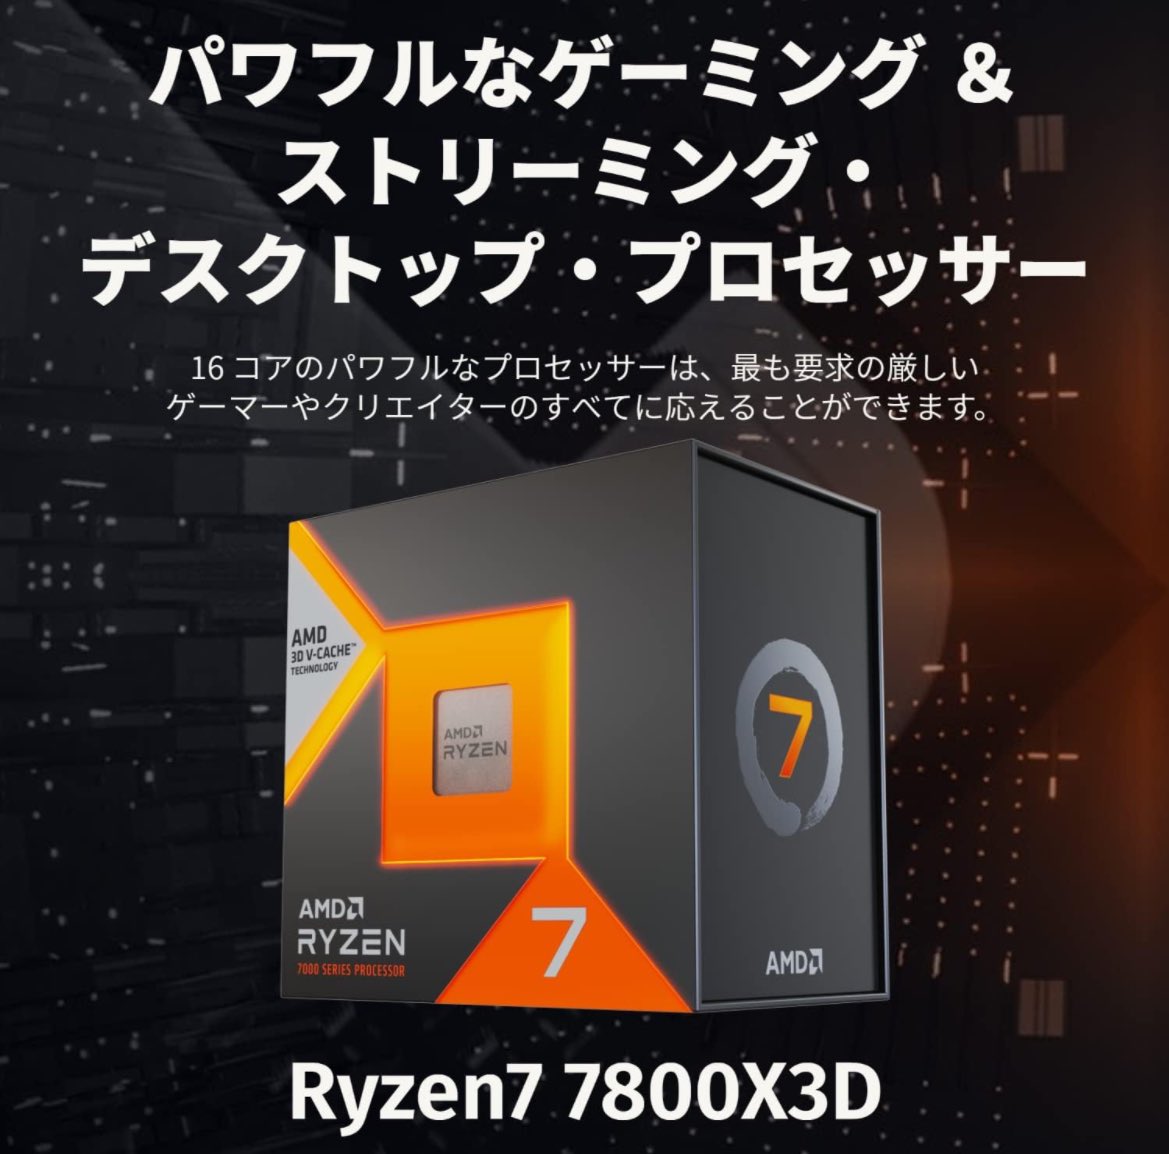 FPSドロップ消えました！

やり方はCPUをintelから
Ryzen7 7800X3Dに変えただけです！！

難点はお金がかかることです！！